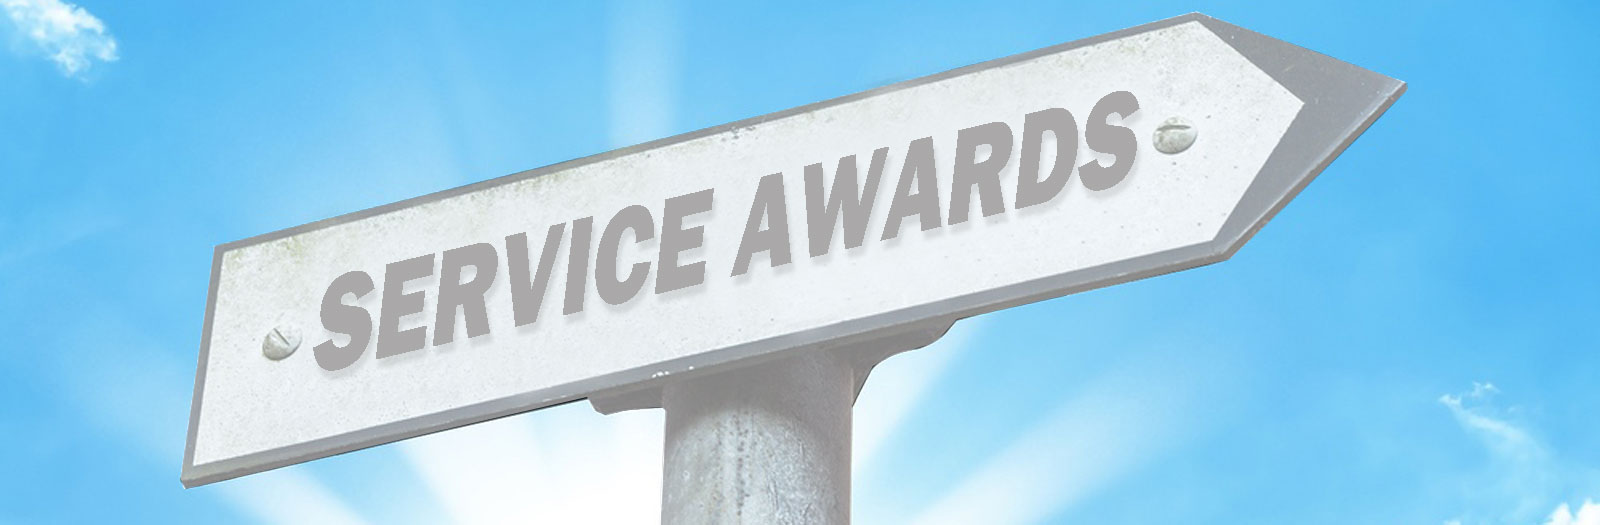 service-awards-blue-sky